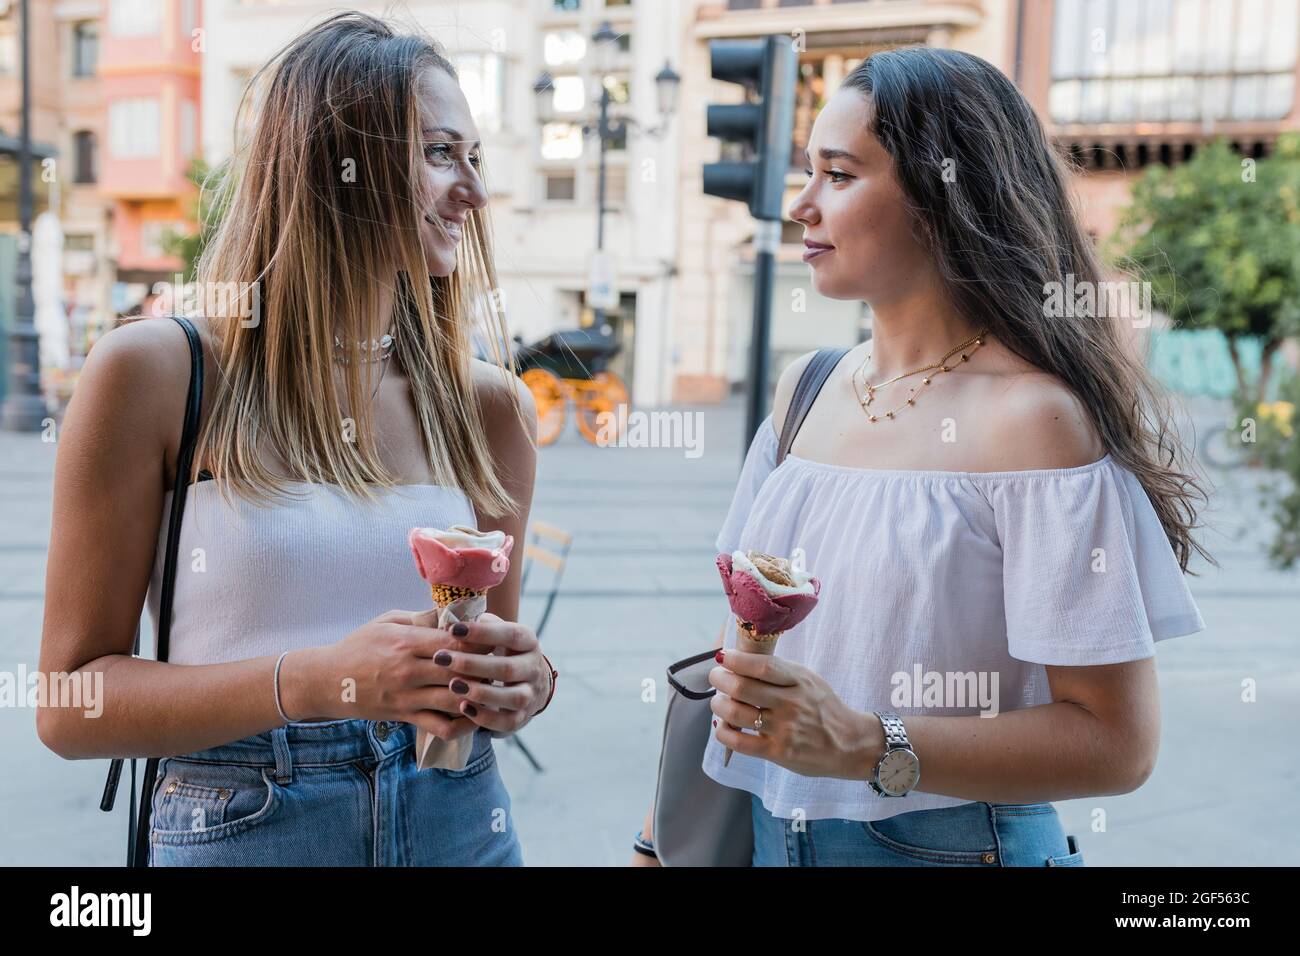 Junge Frauen halten Eiszapfen, während sie sich in der Stadt angucken Stockfoto